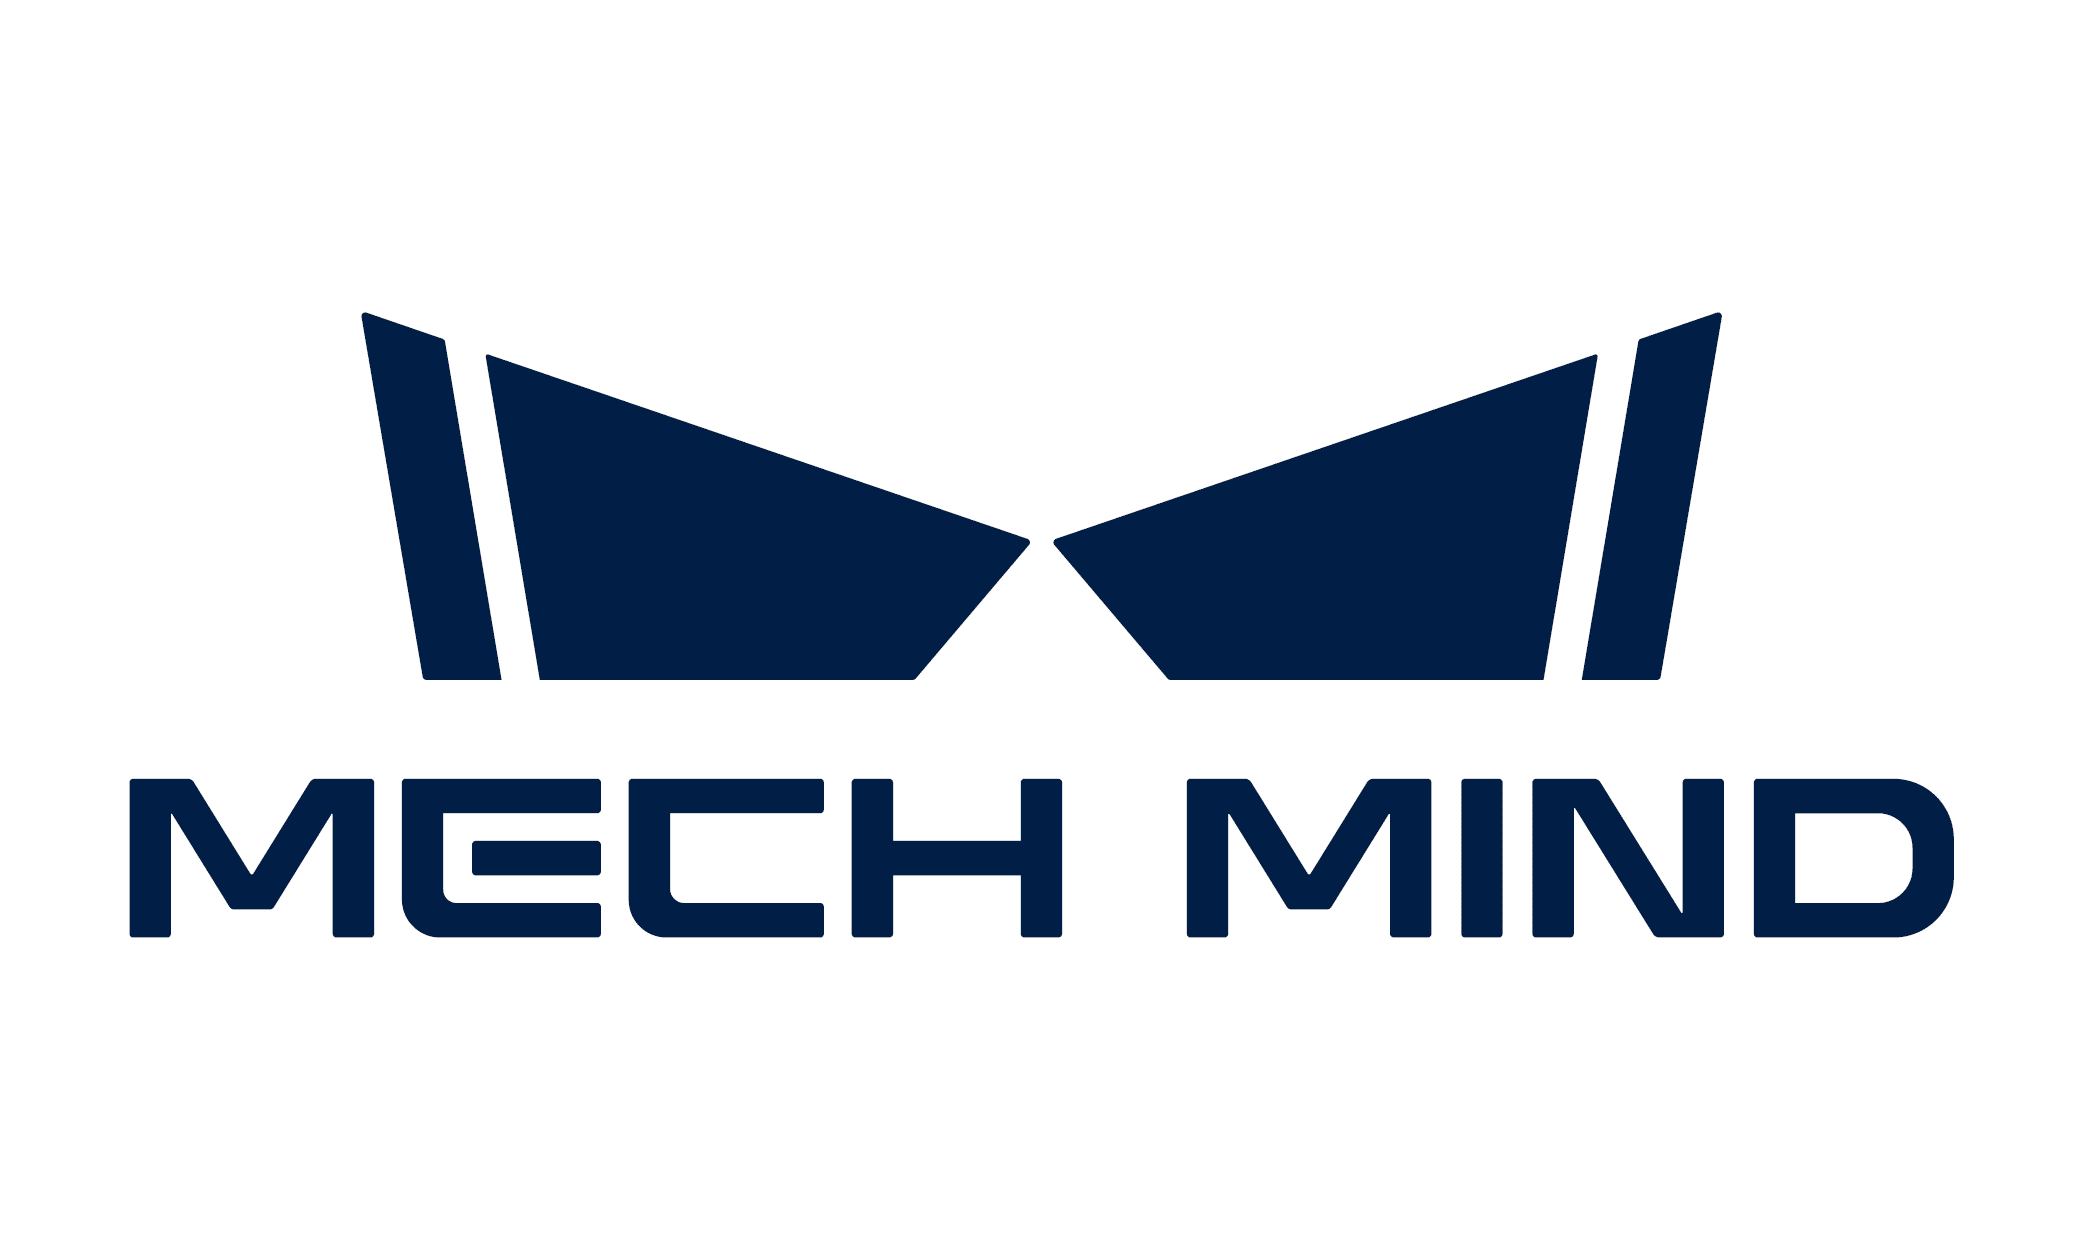 Mech-Mind